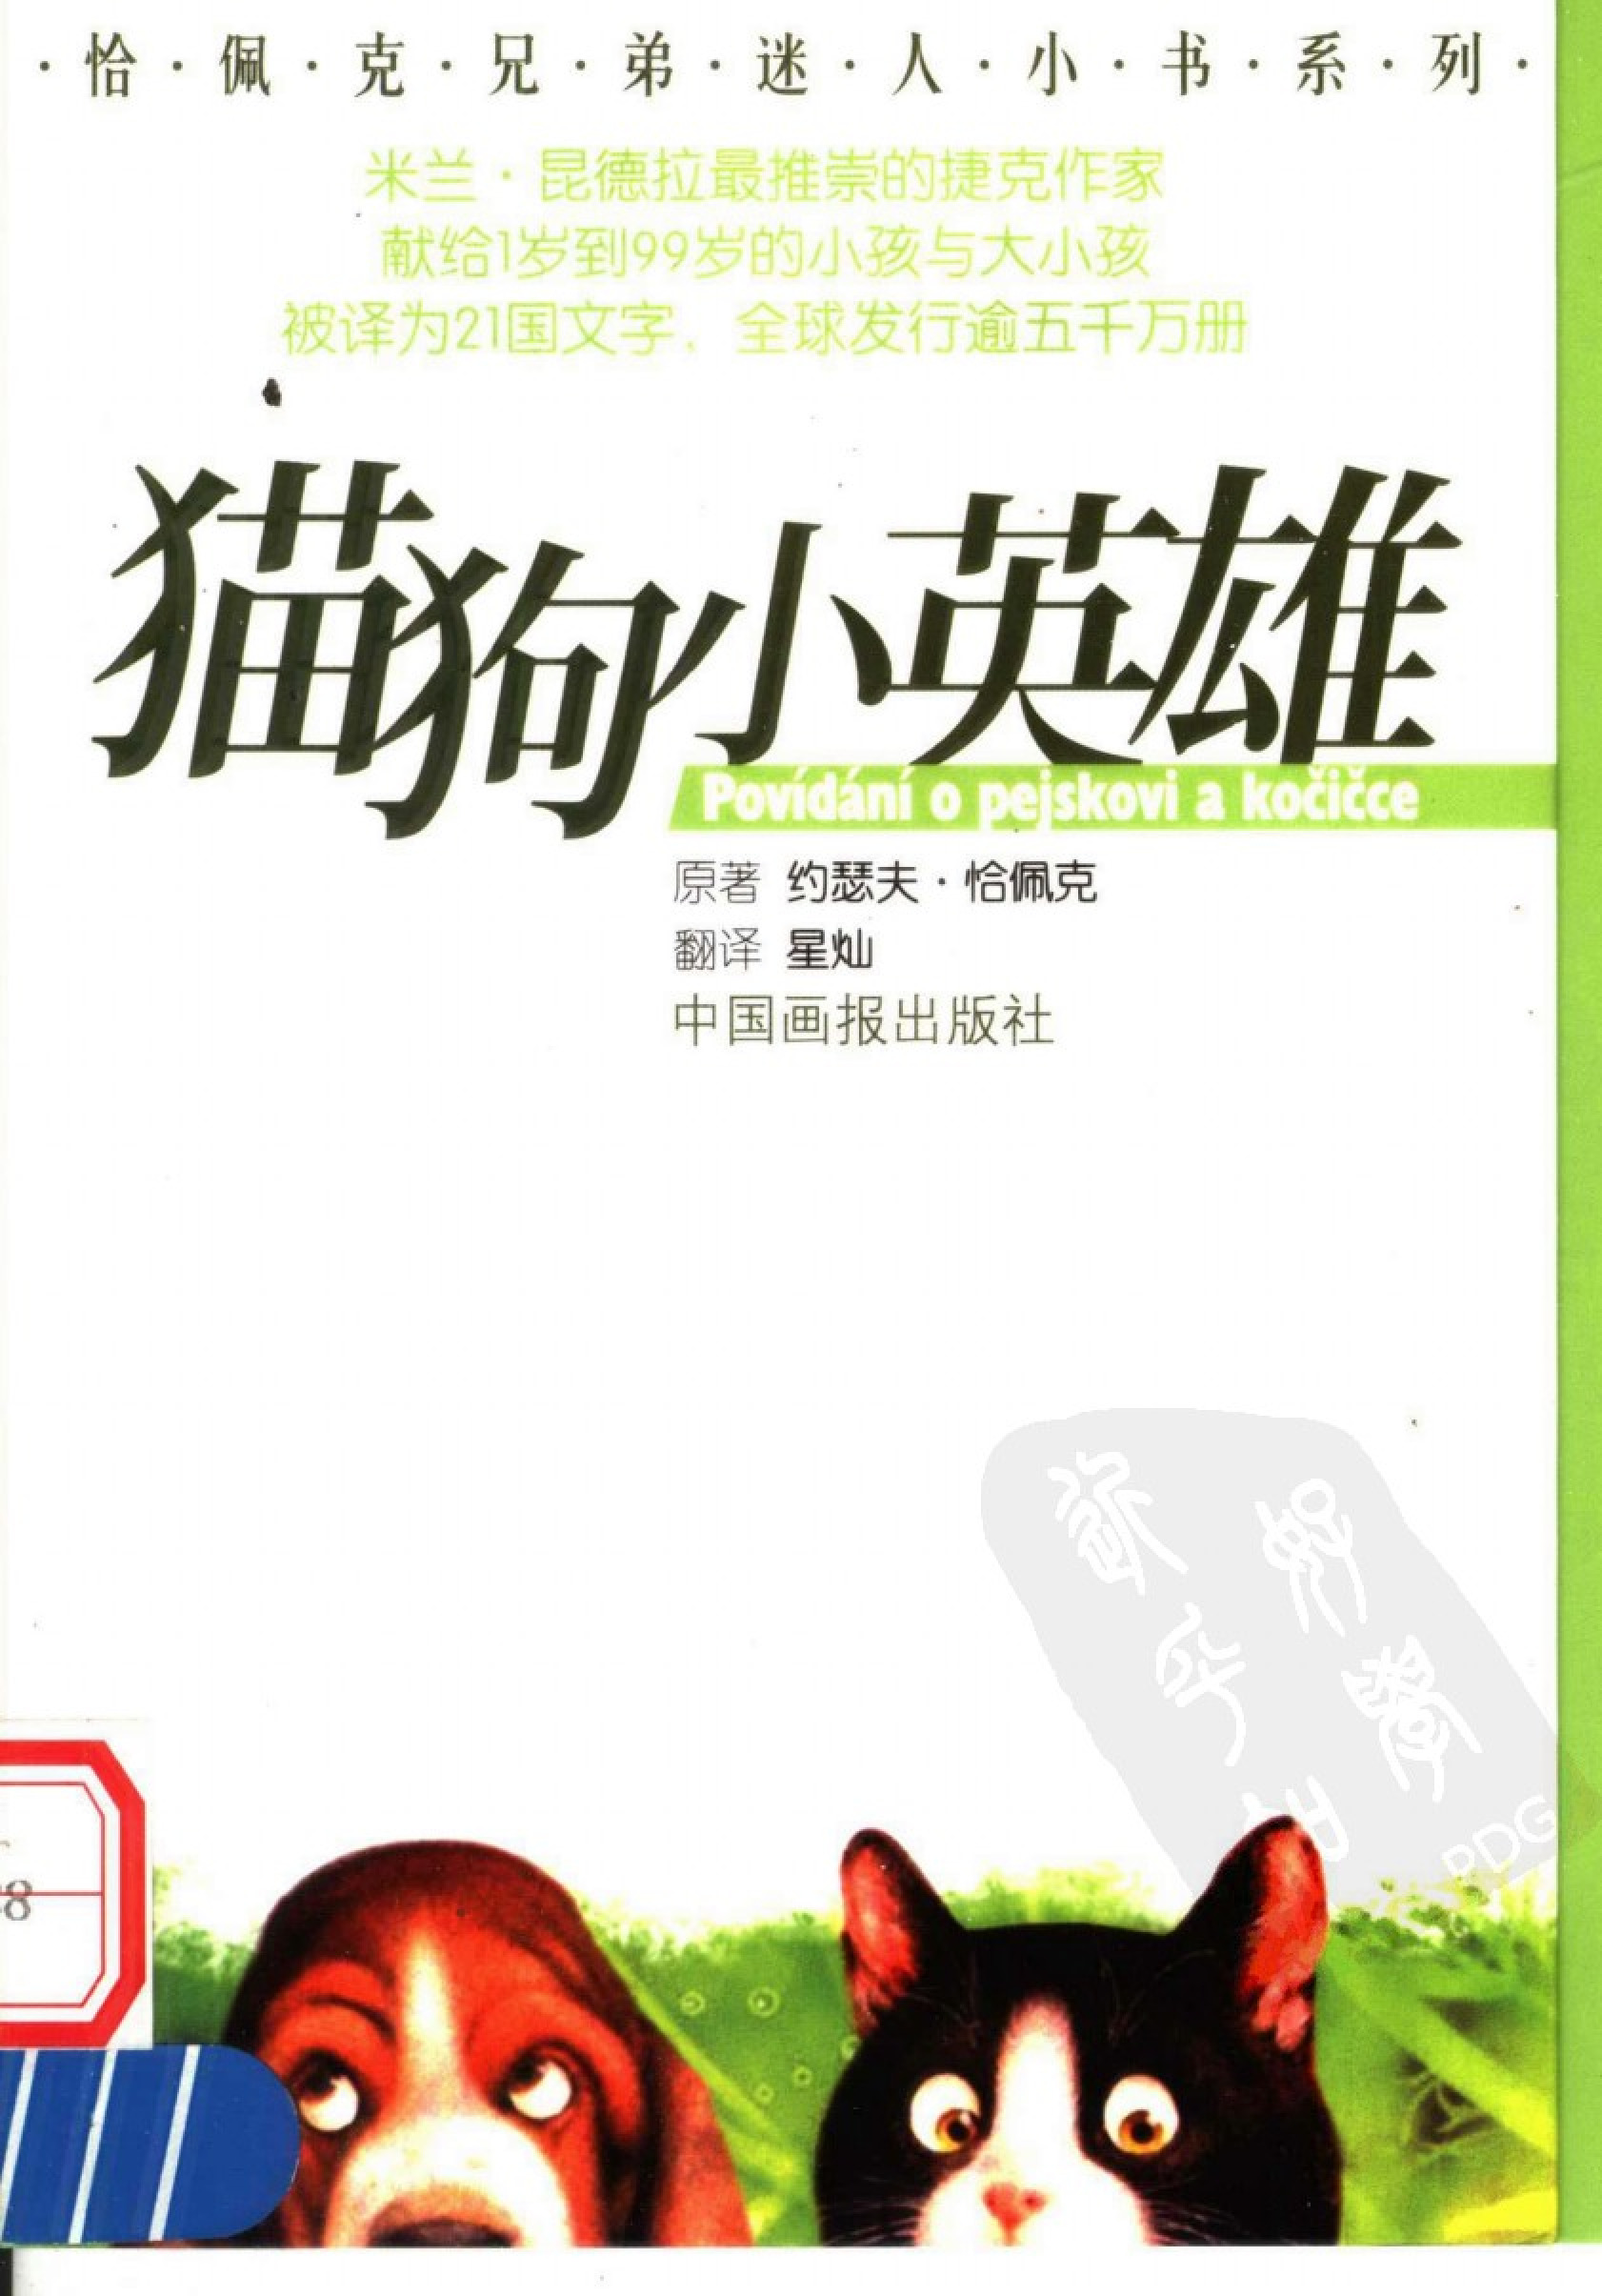 猫狗小英雄[捷克]恰佩克.星灿译.中国画报出版社(2005)